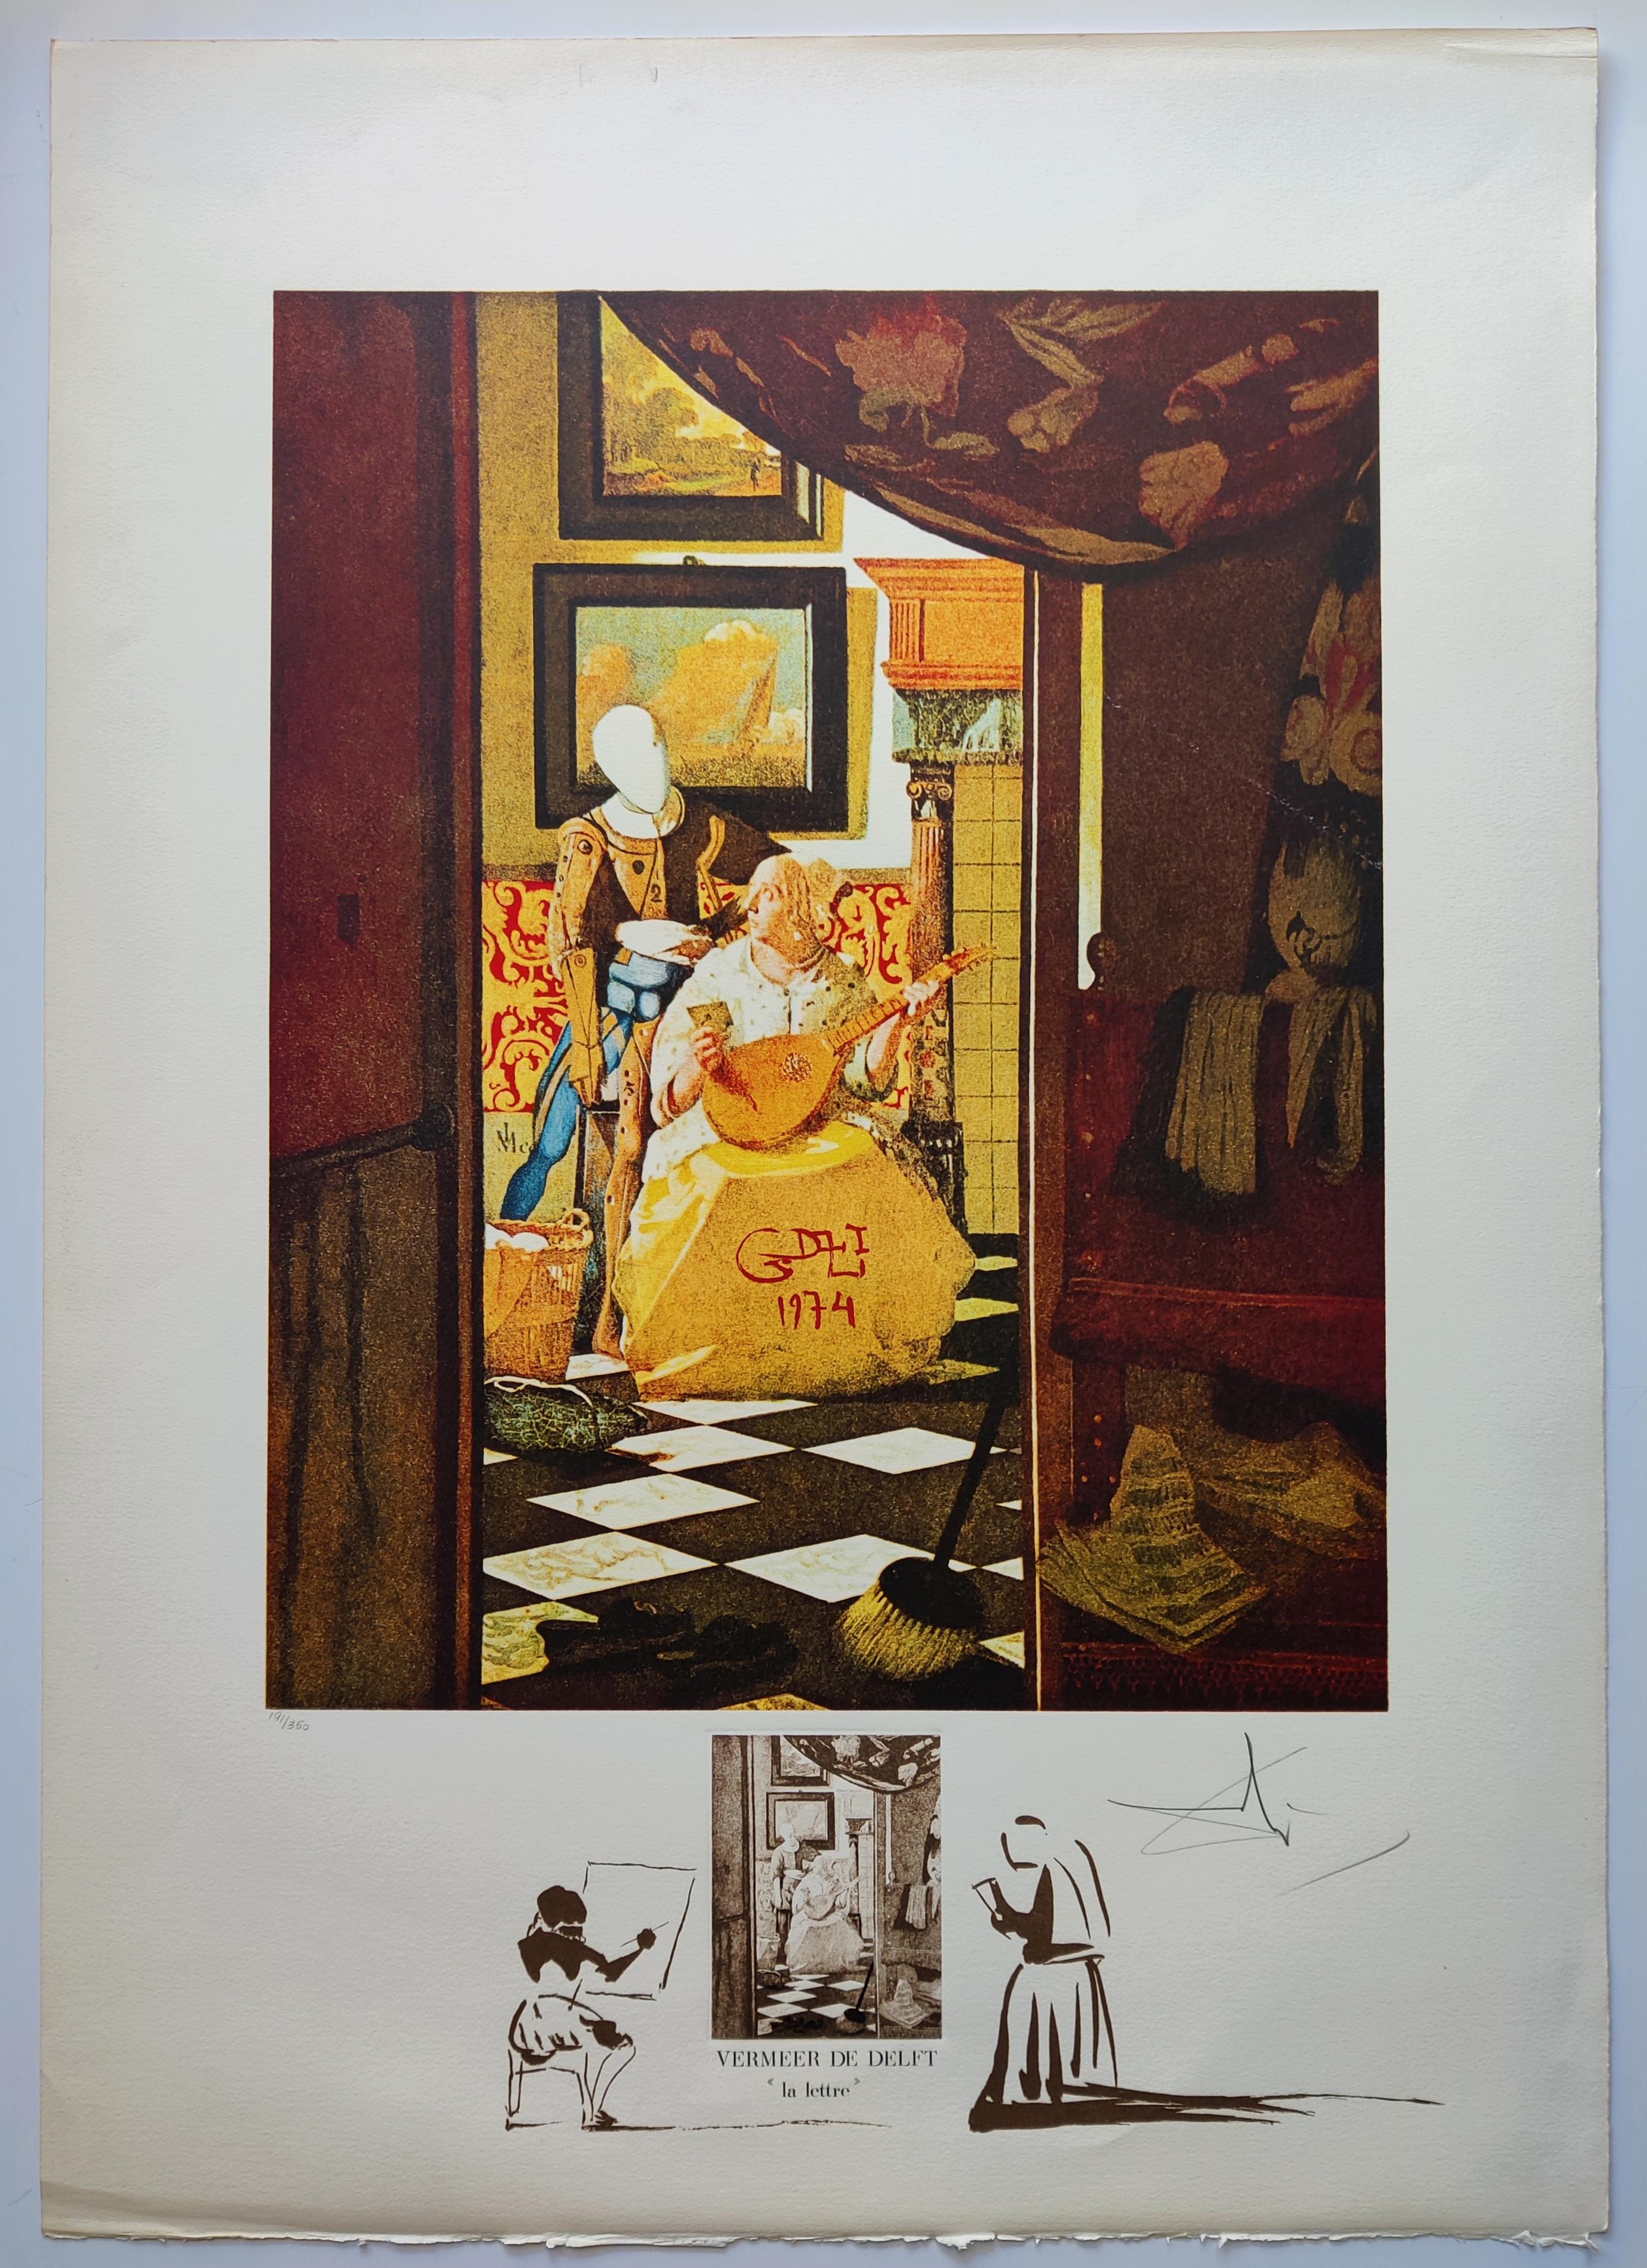 Salvador Dali – La Lettre von Vermeer, 1974 – Print von Salvador Dalí